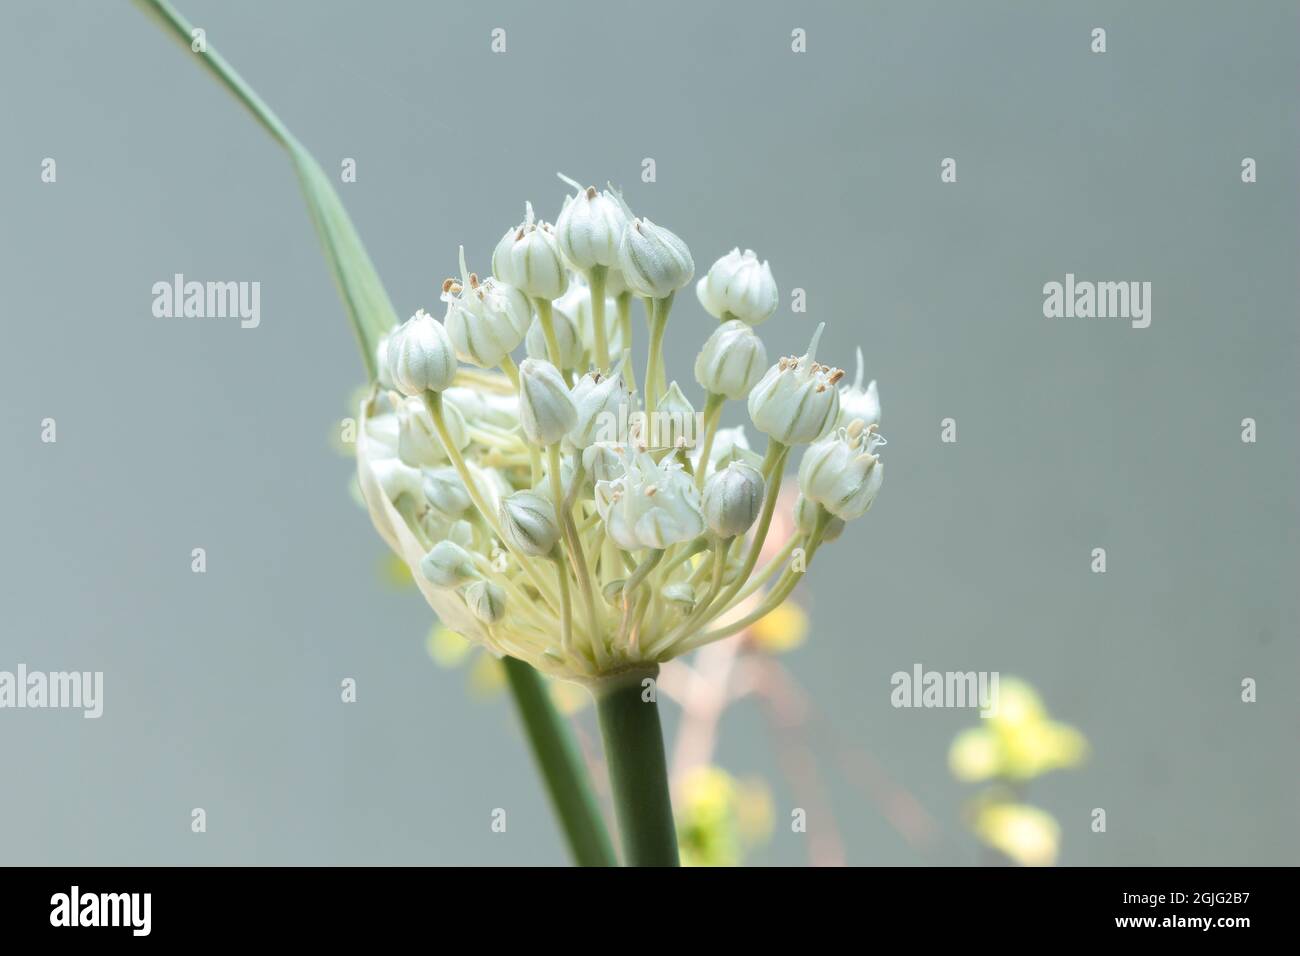 Flor de puerro o puerro florecen en un jardín de hierbas Foto de stock